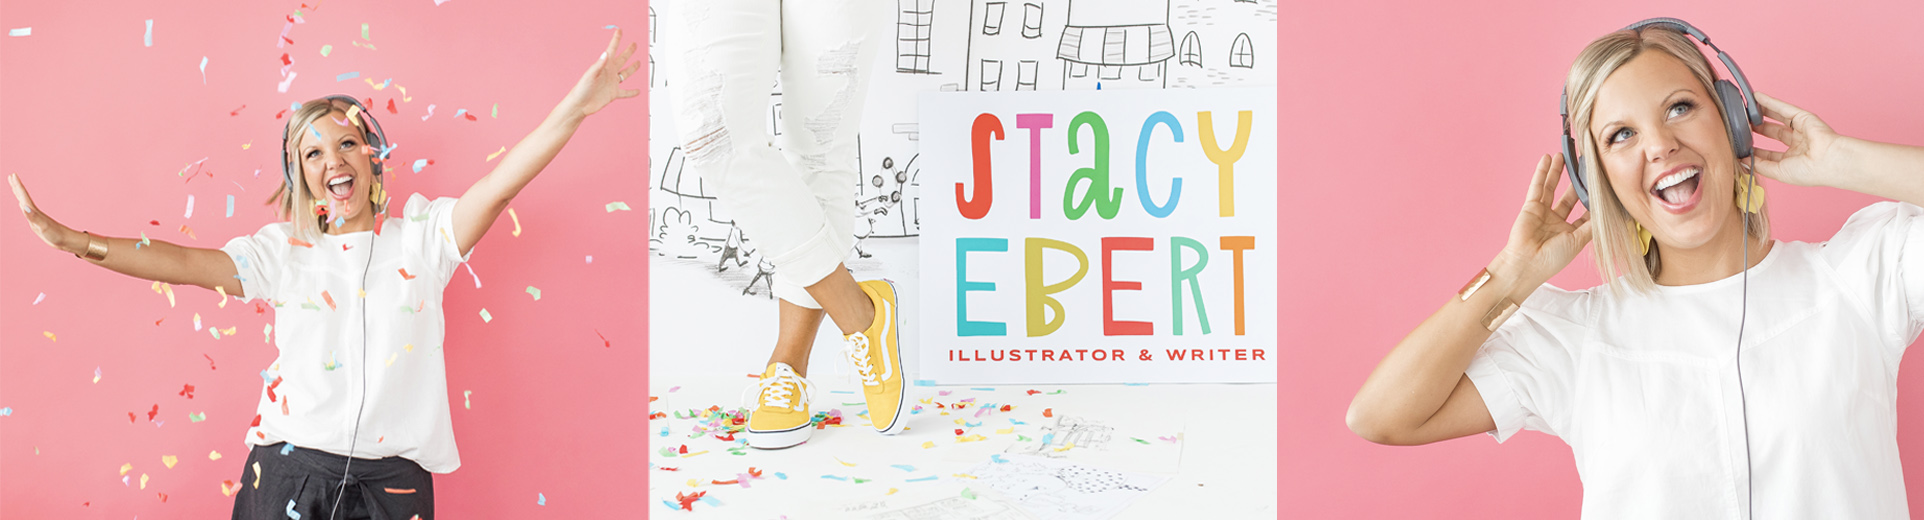 Branding Session for Stacy Ebert, Children's Book Illustrator